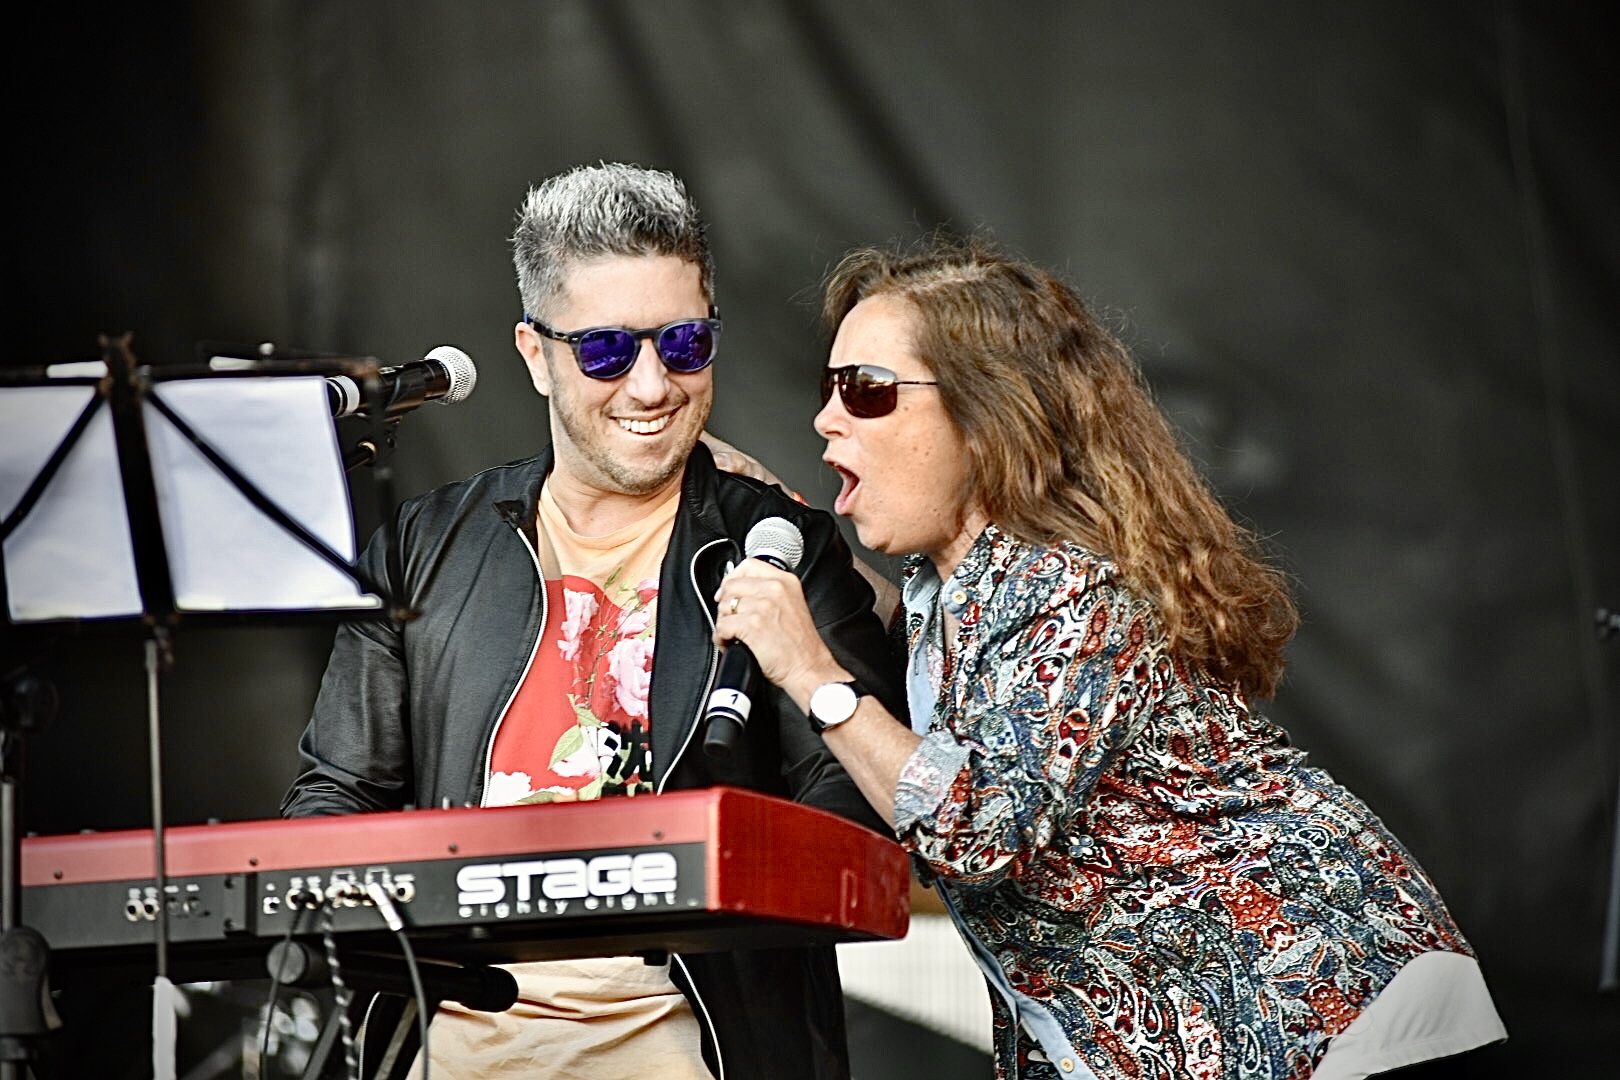 Sandra Mihanovich y Jey Mammon entonaron el simbólico "Soy lo que soy" en el escenario (Crédito: Ariel Torres)